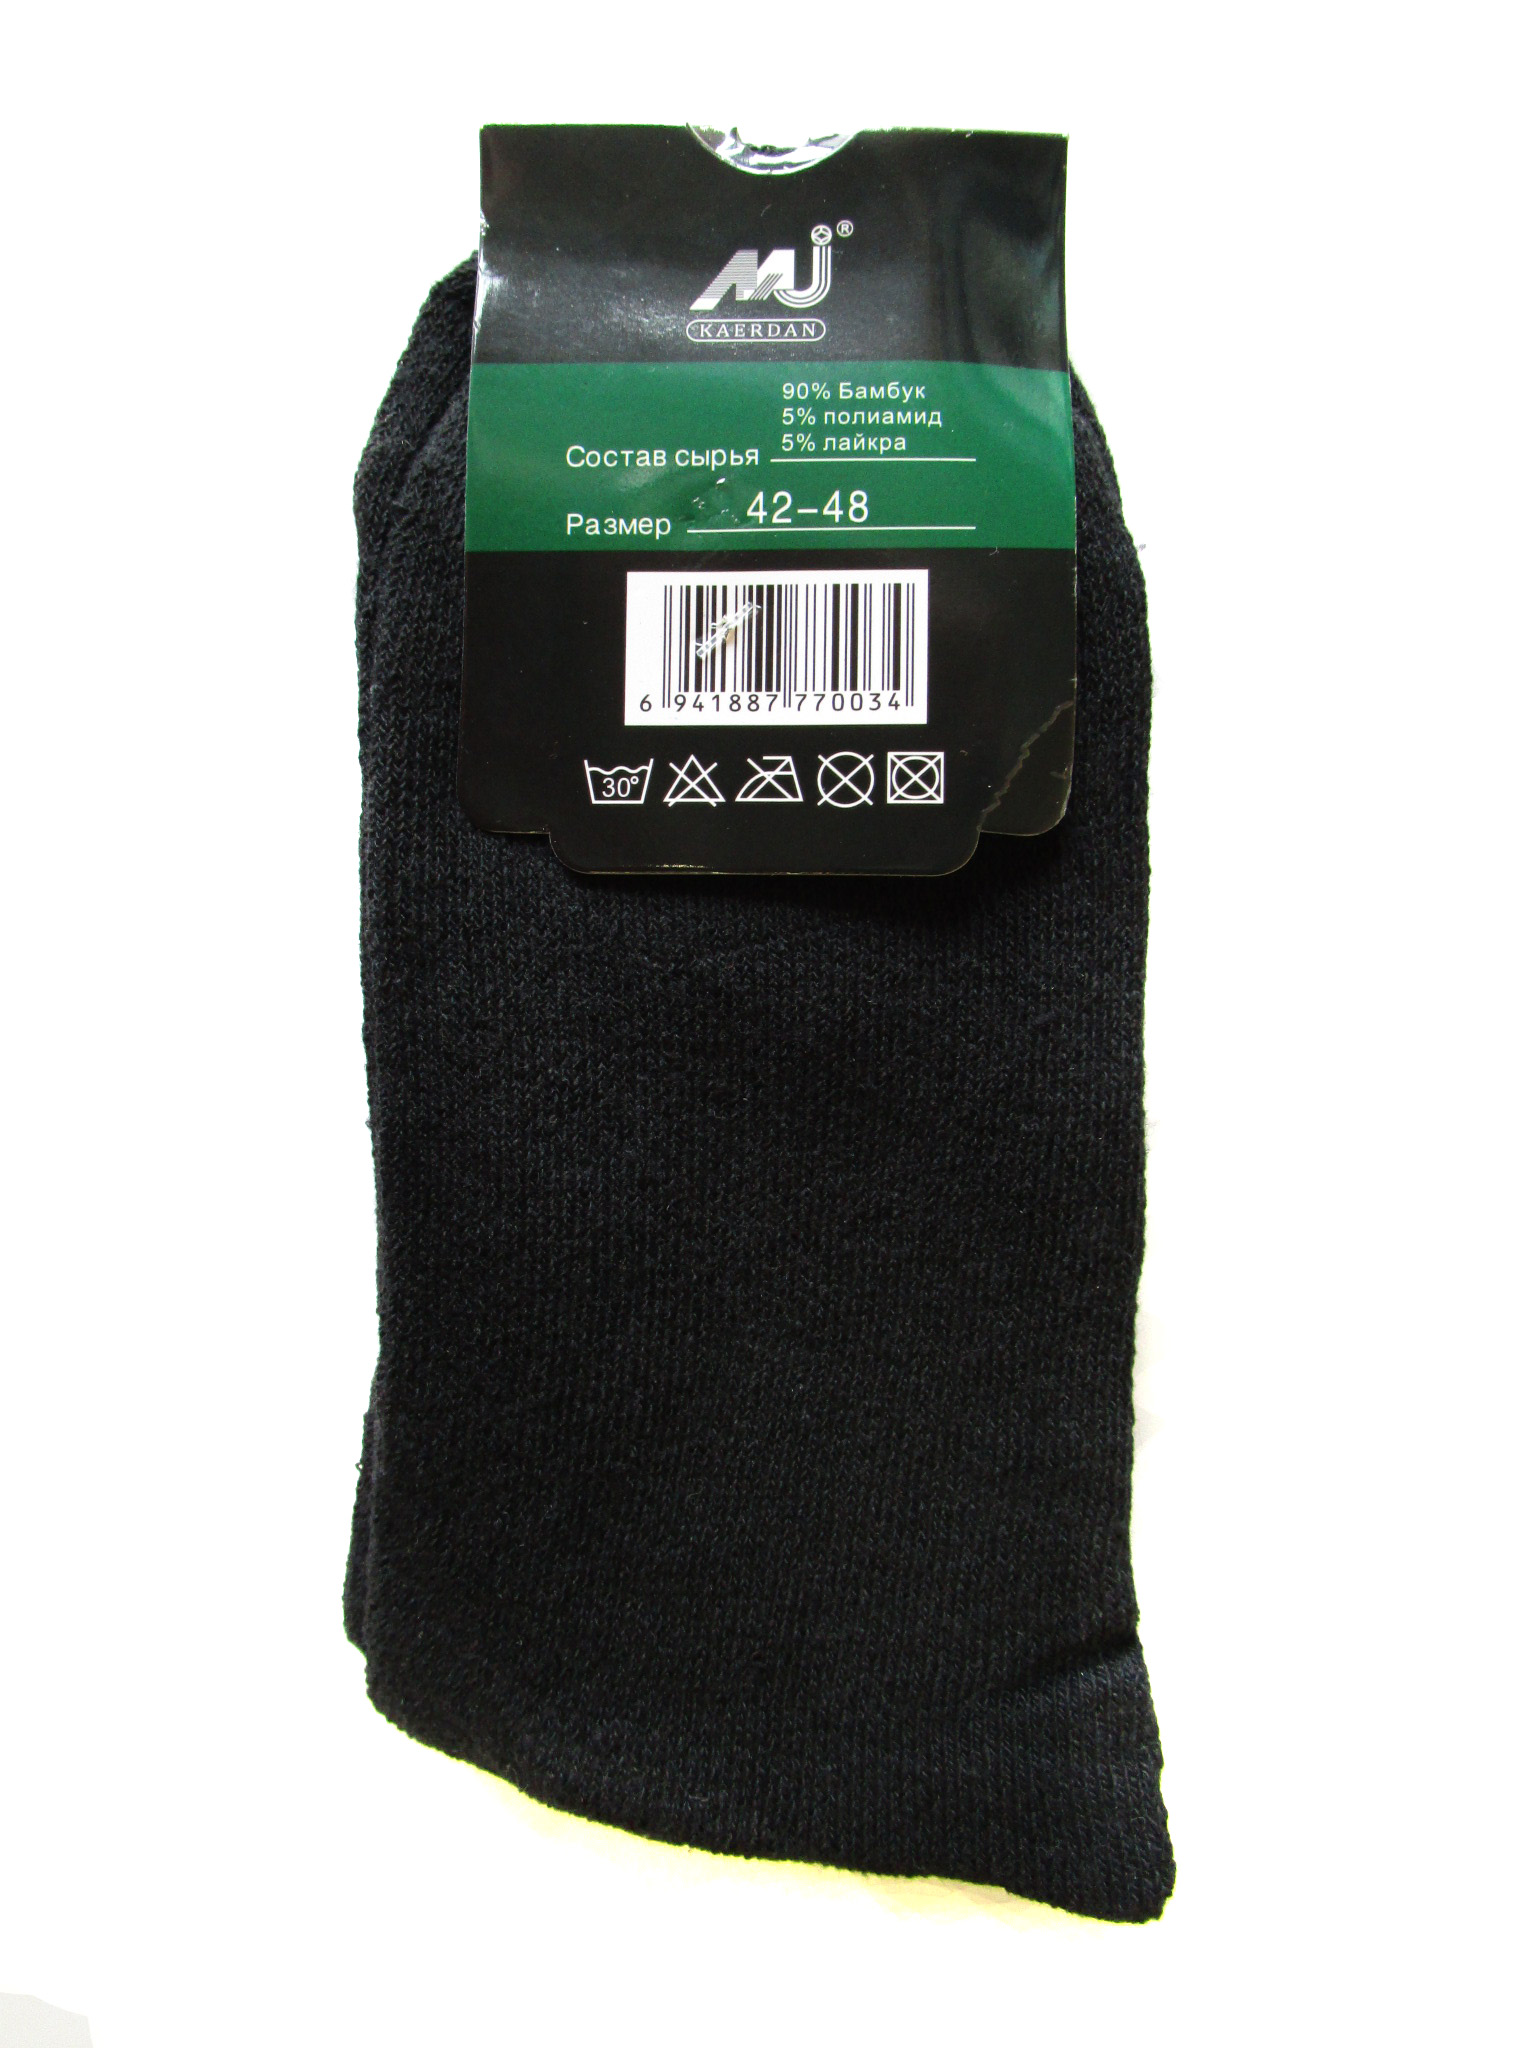 Мужские носки теплые (арт.7003)